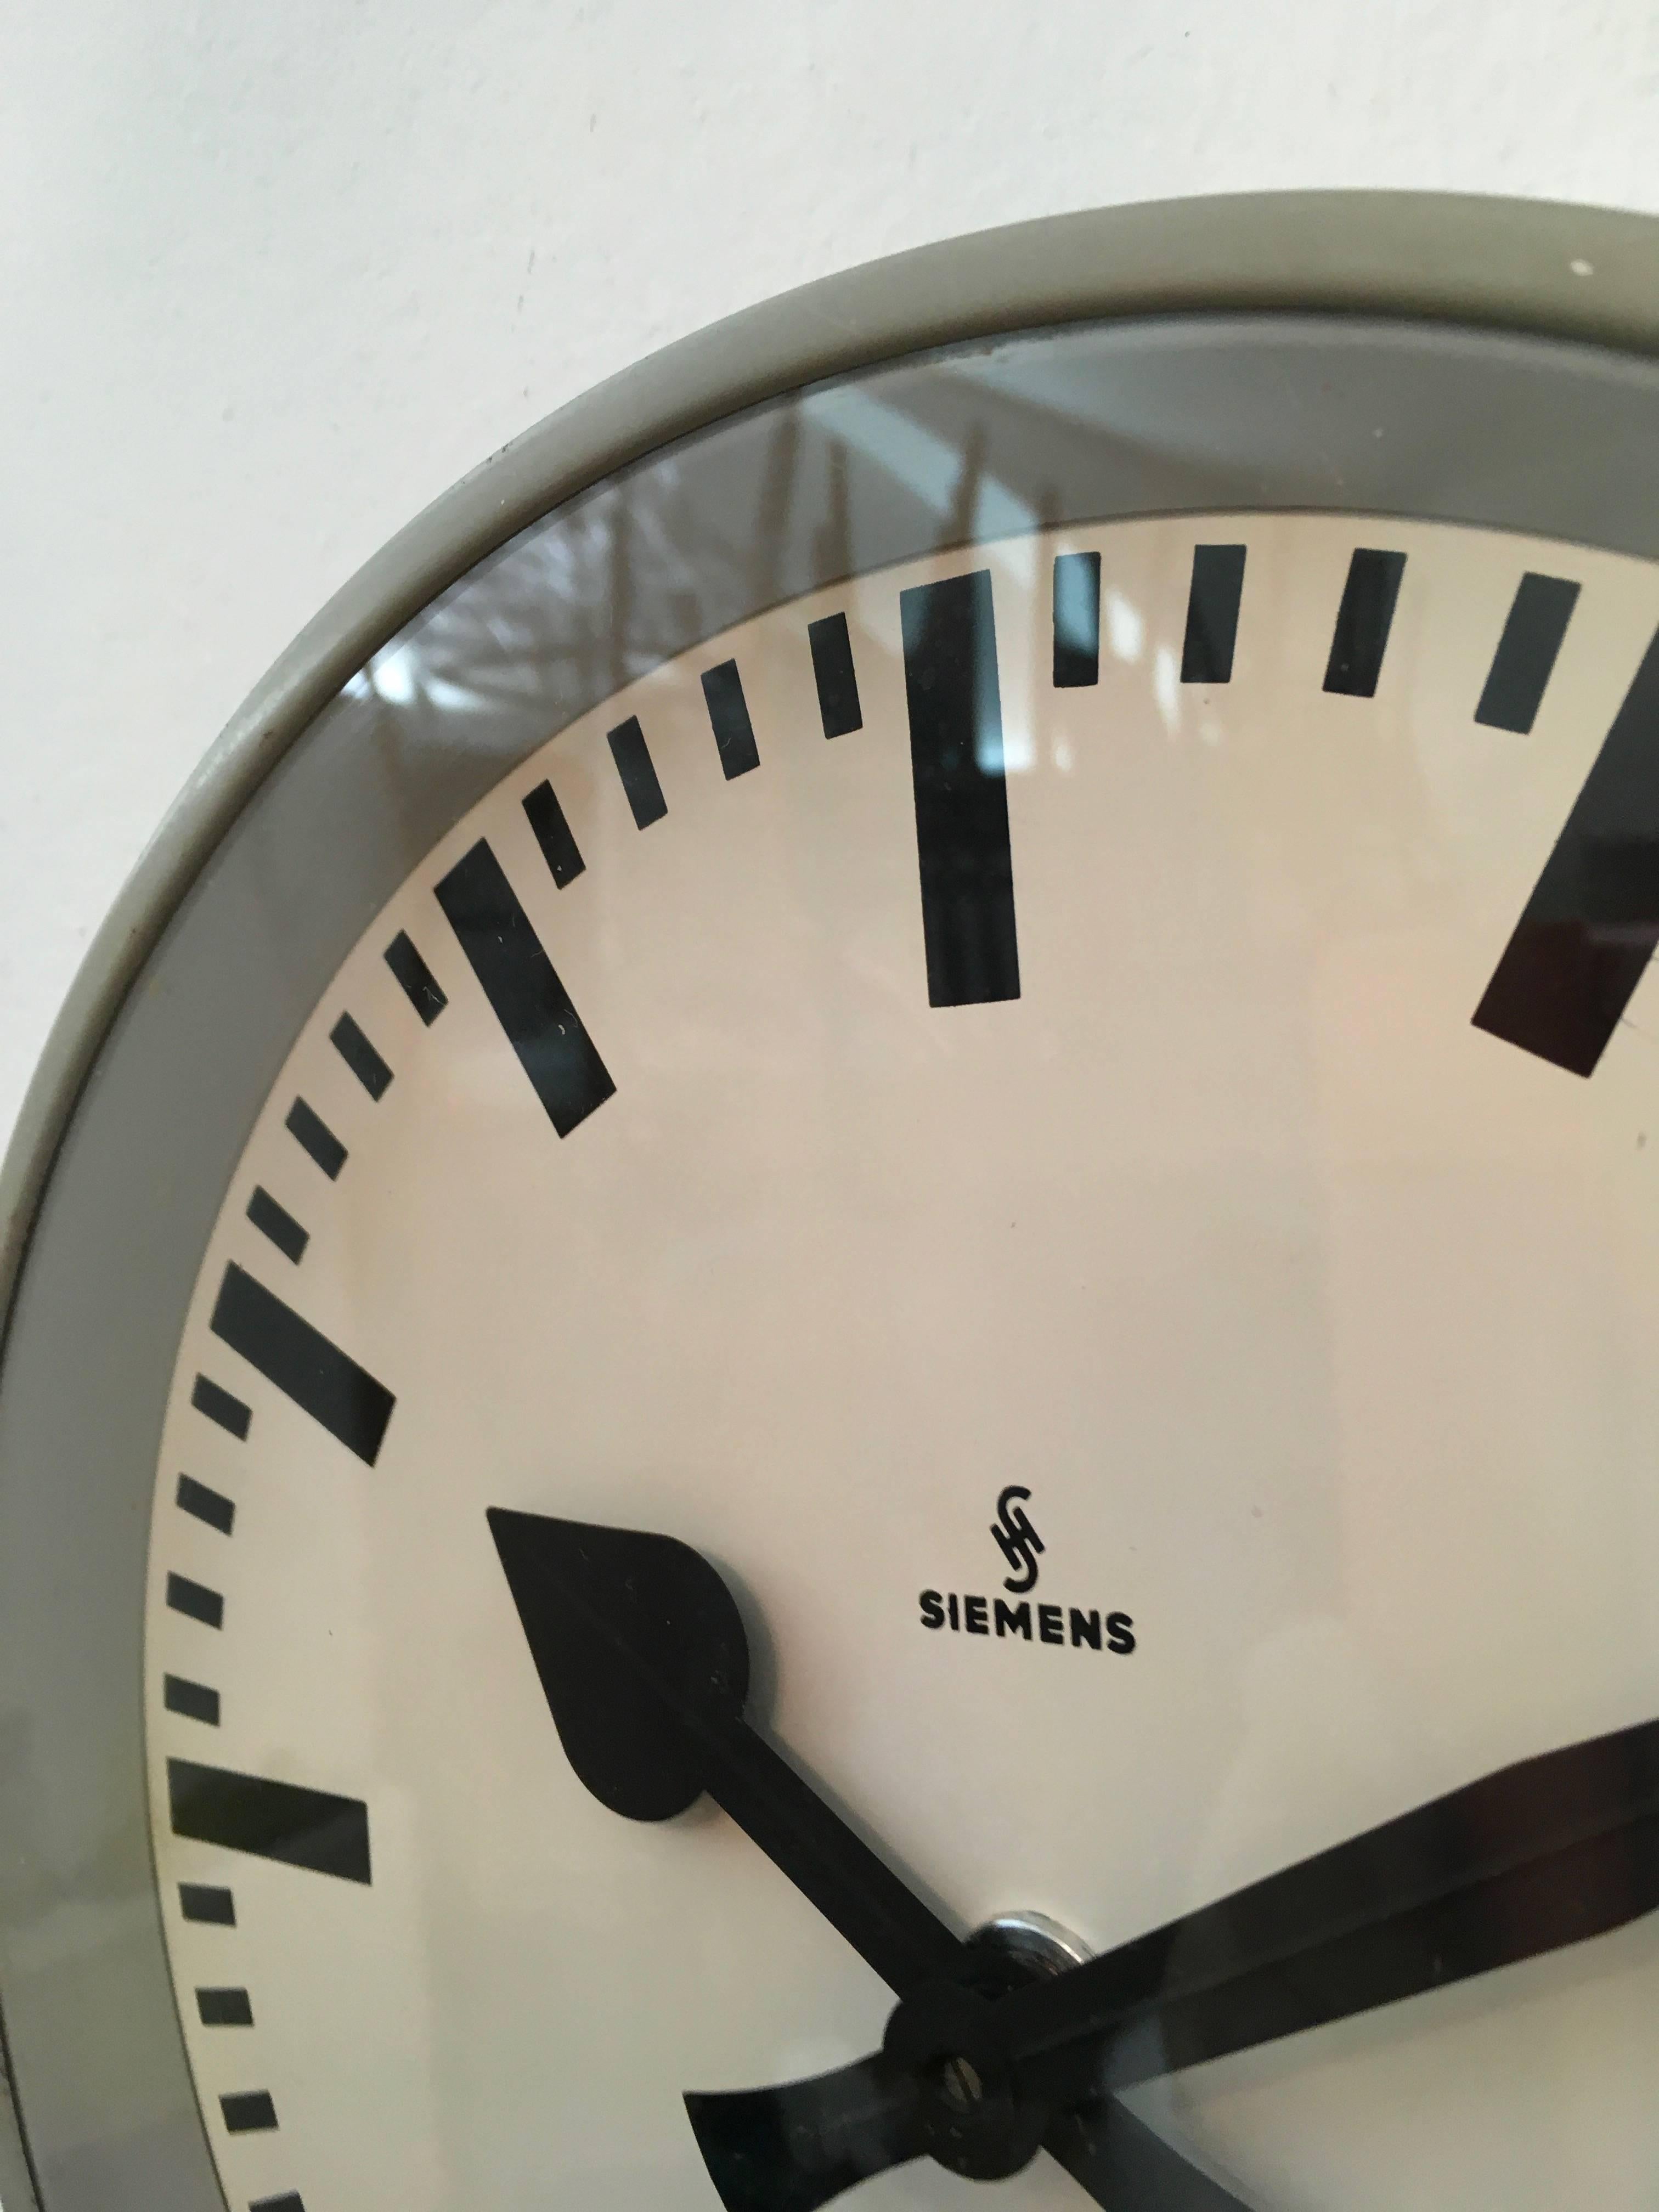 Siemens Factory or Workshop Wall Clock 1